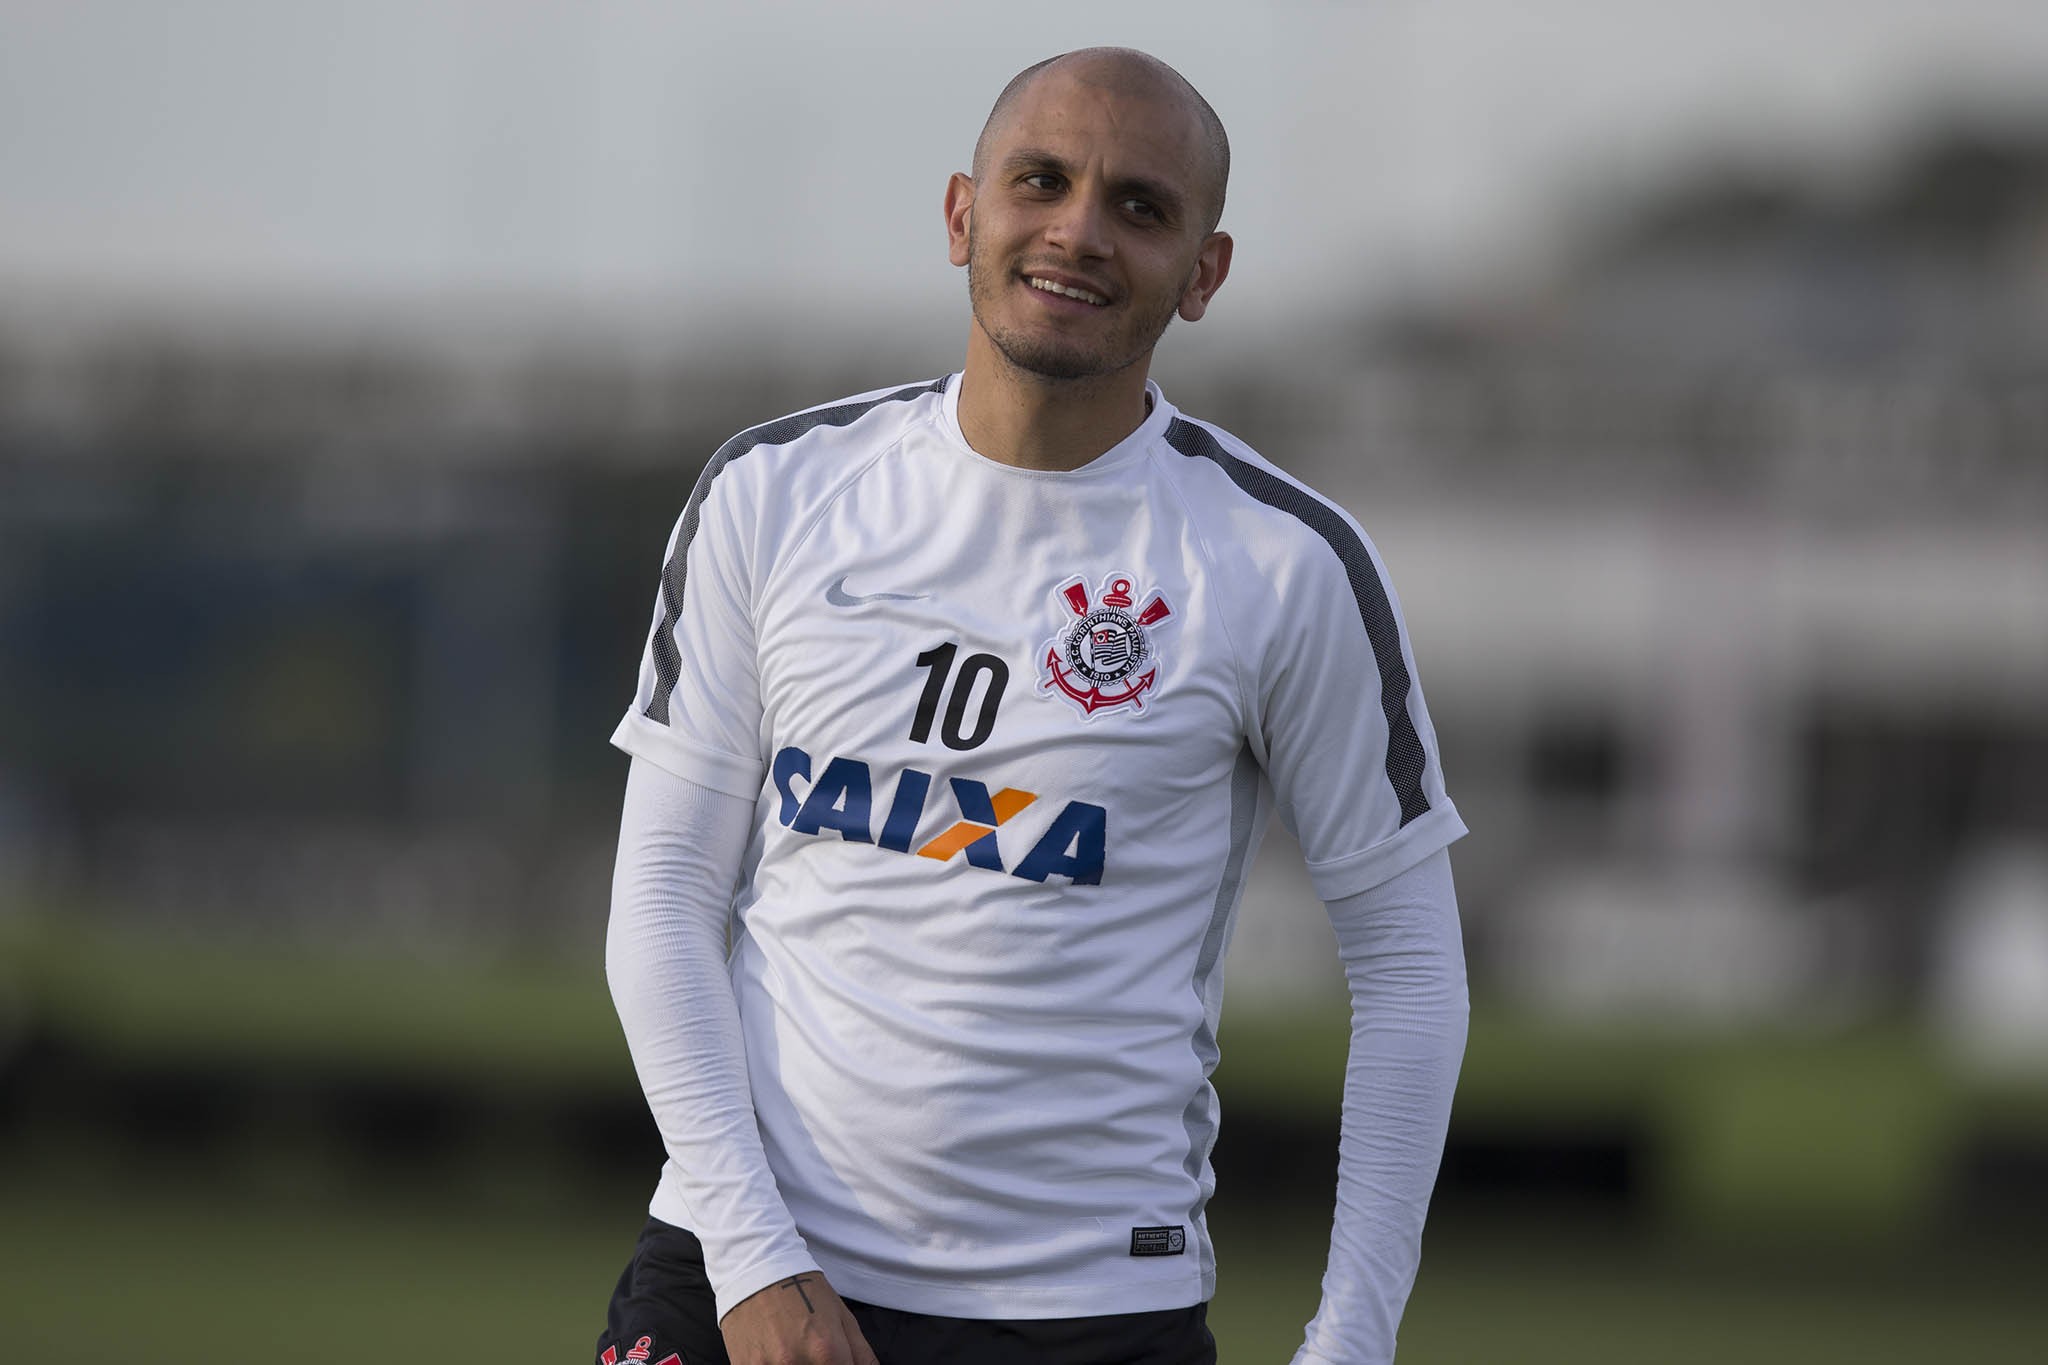 Fábio Santos - O lateral-esquerdo deixou o Corinthians em 2015 para jogar no futebol mexicano. Retornou ao futebol brasileiro e está no Atlético-MG.